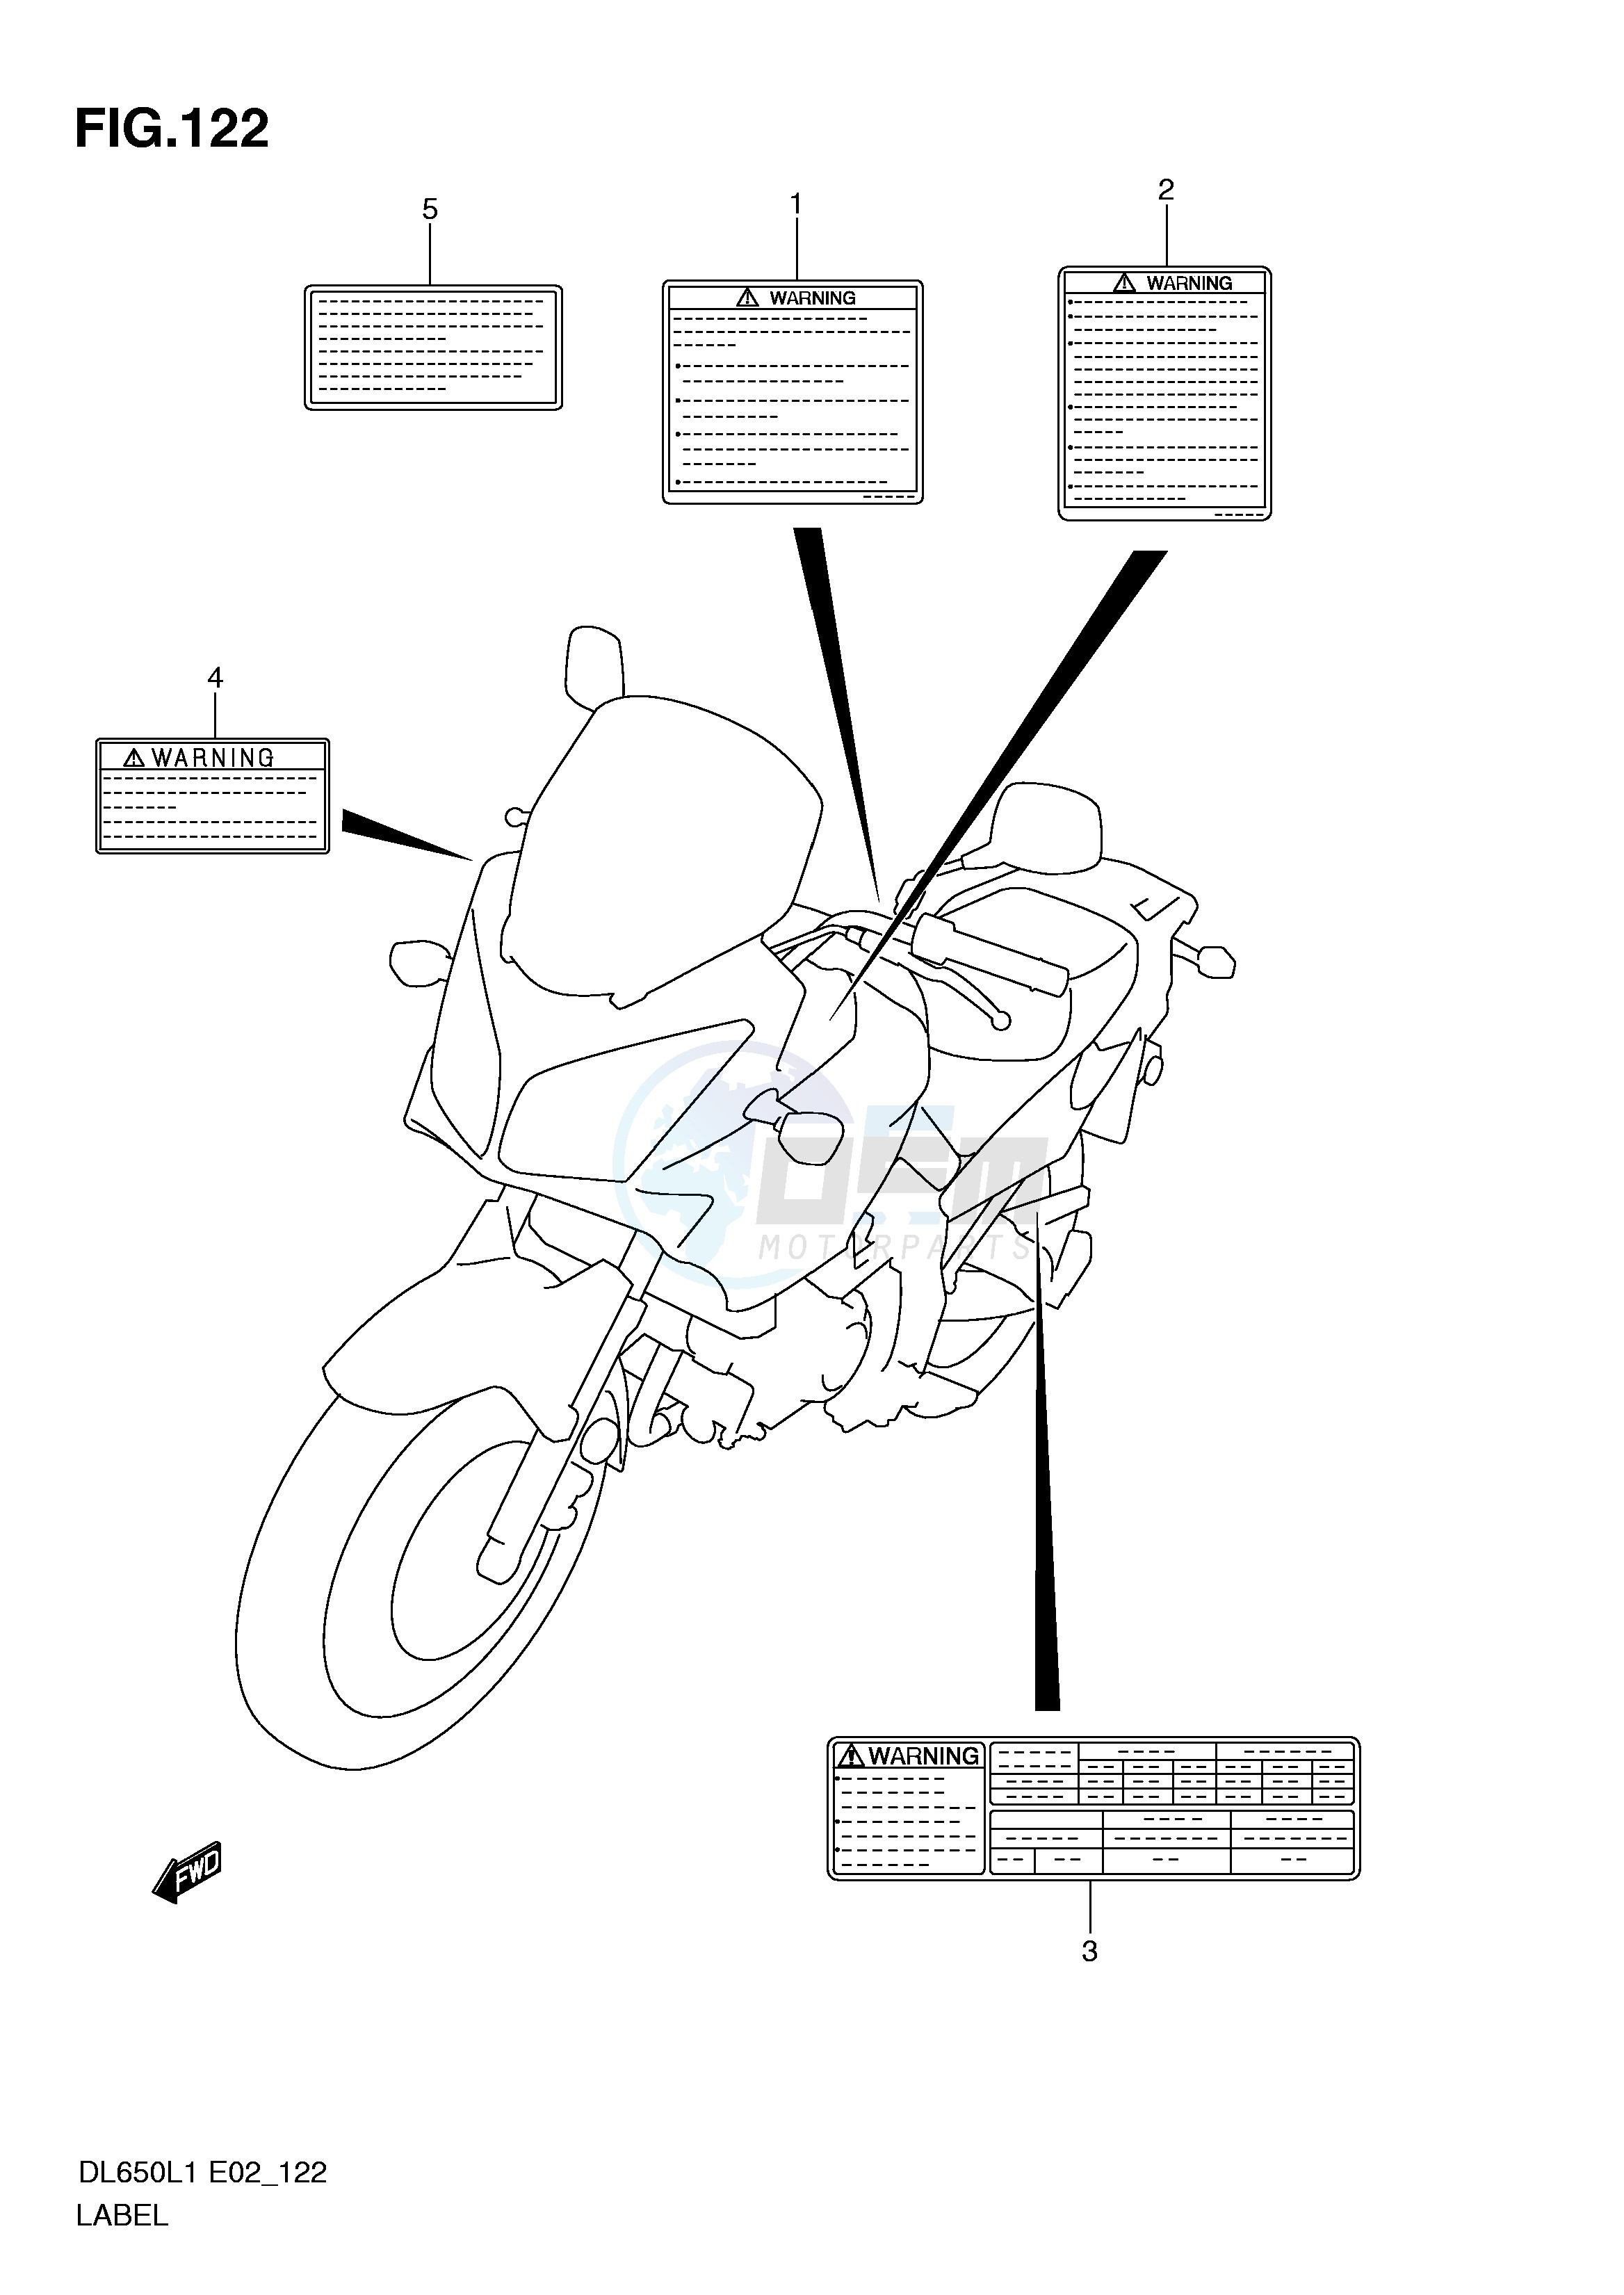 LABEL (DL650L1 E19) blueprint